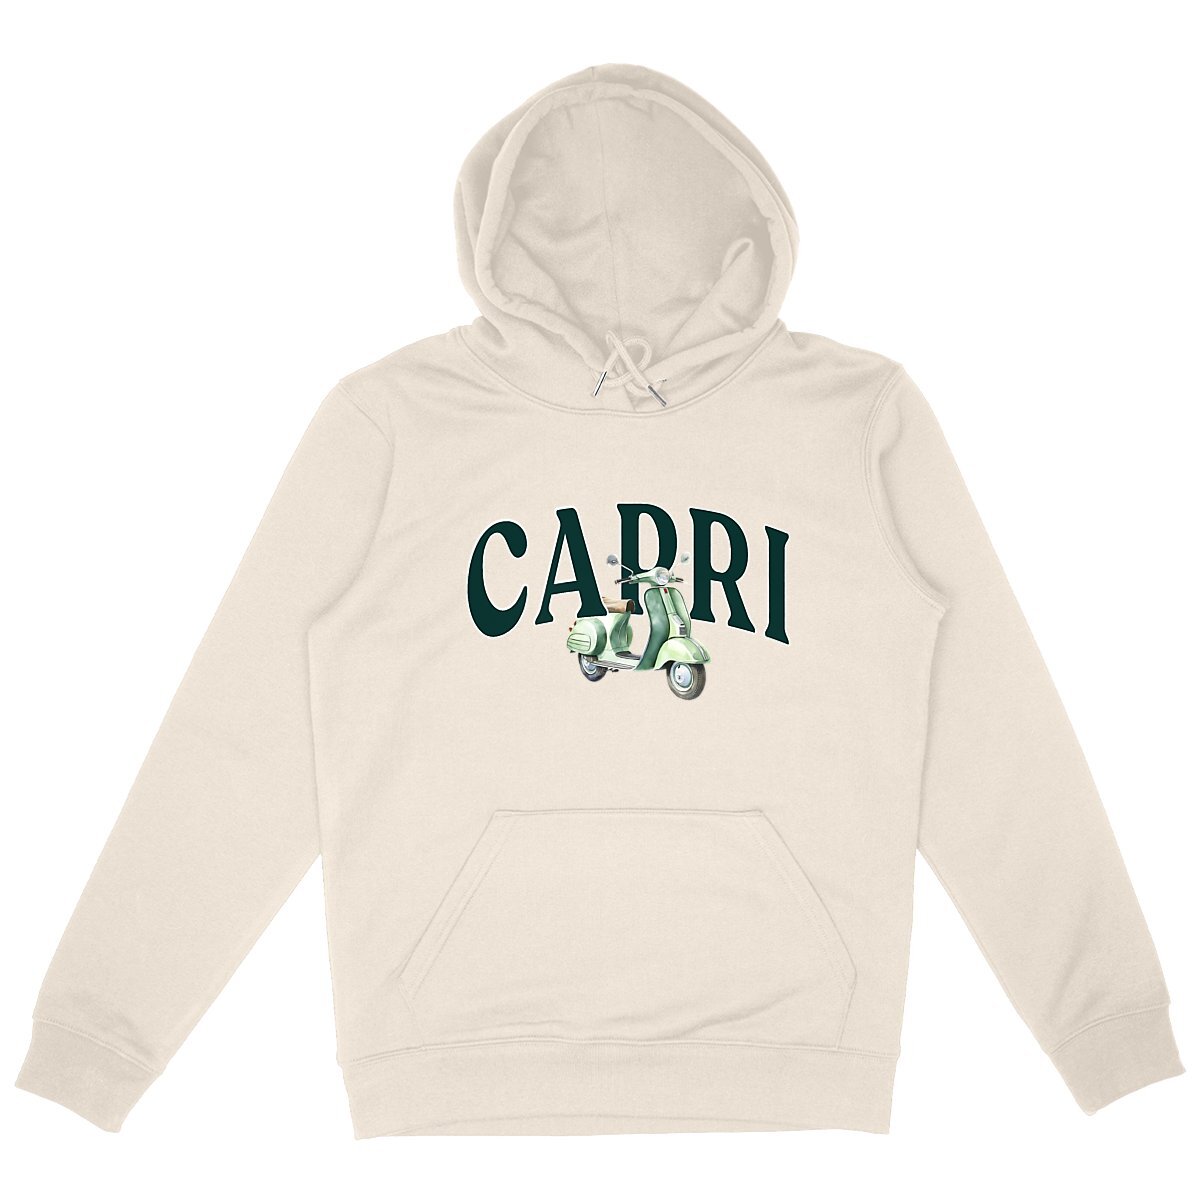 Capri - Organic Hoodie - The Refined Spirit